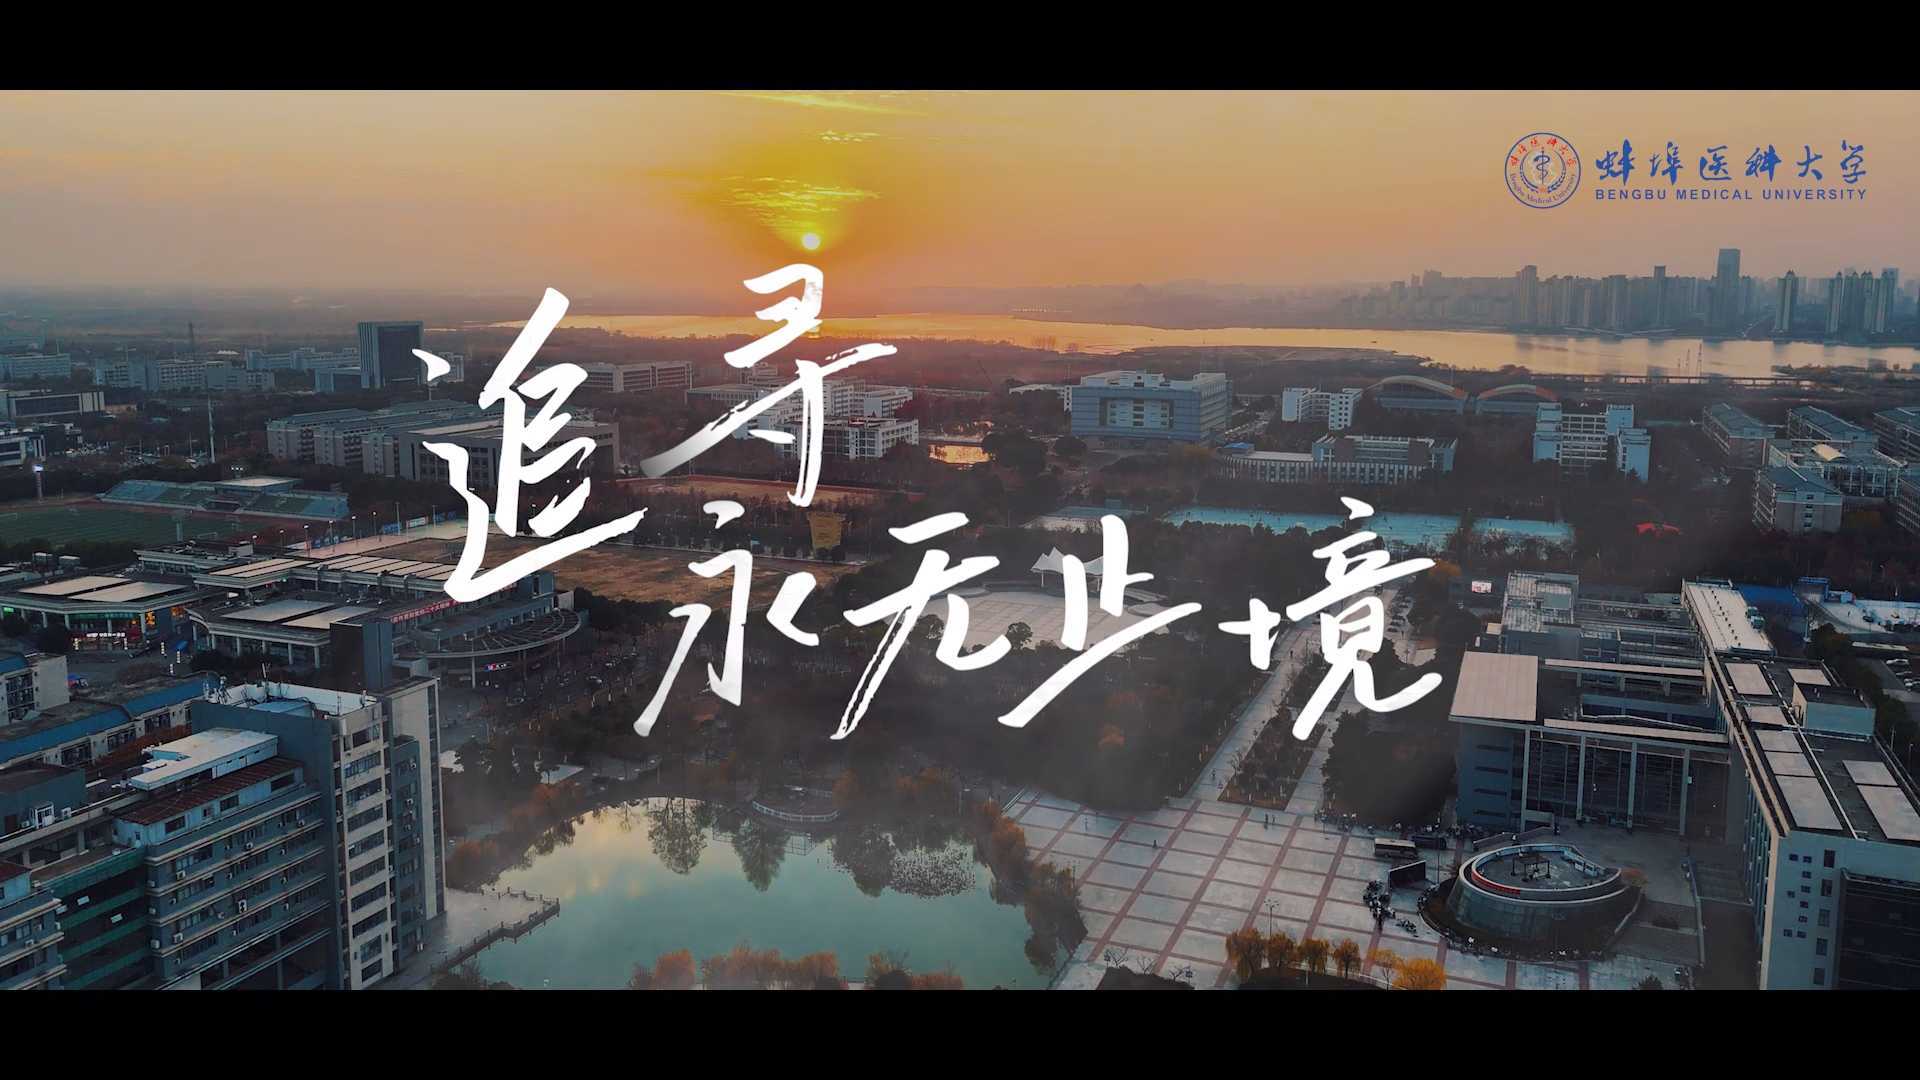 蚌埠医科大学形象宣传片《追寻》